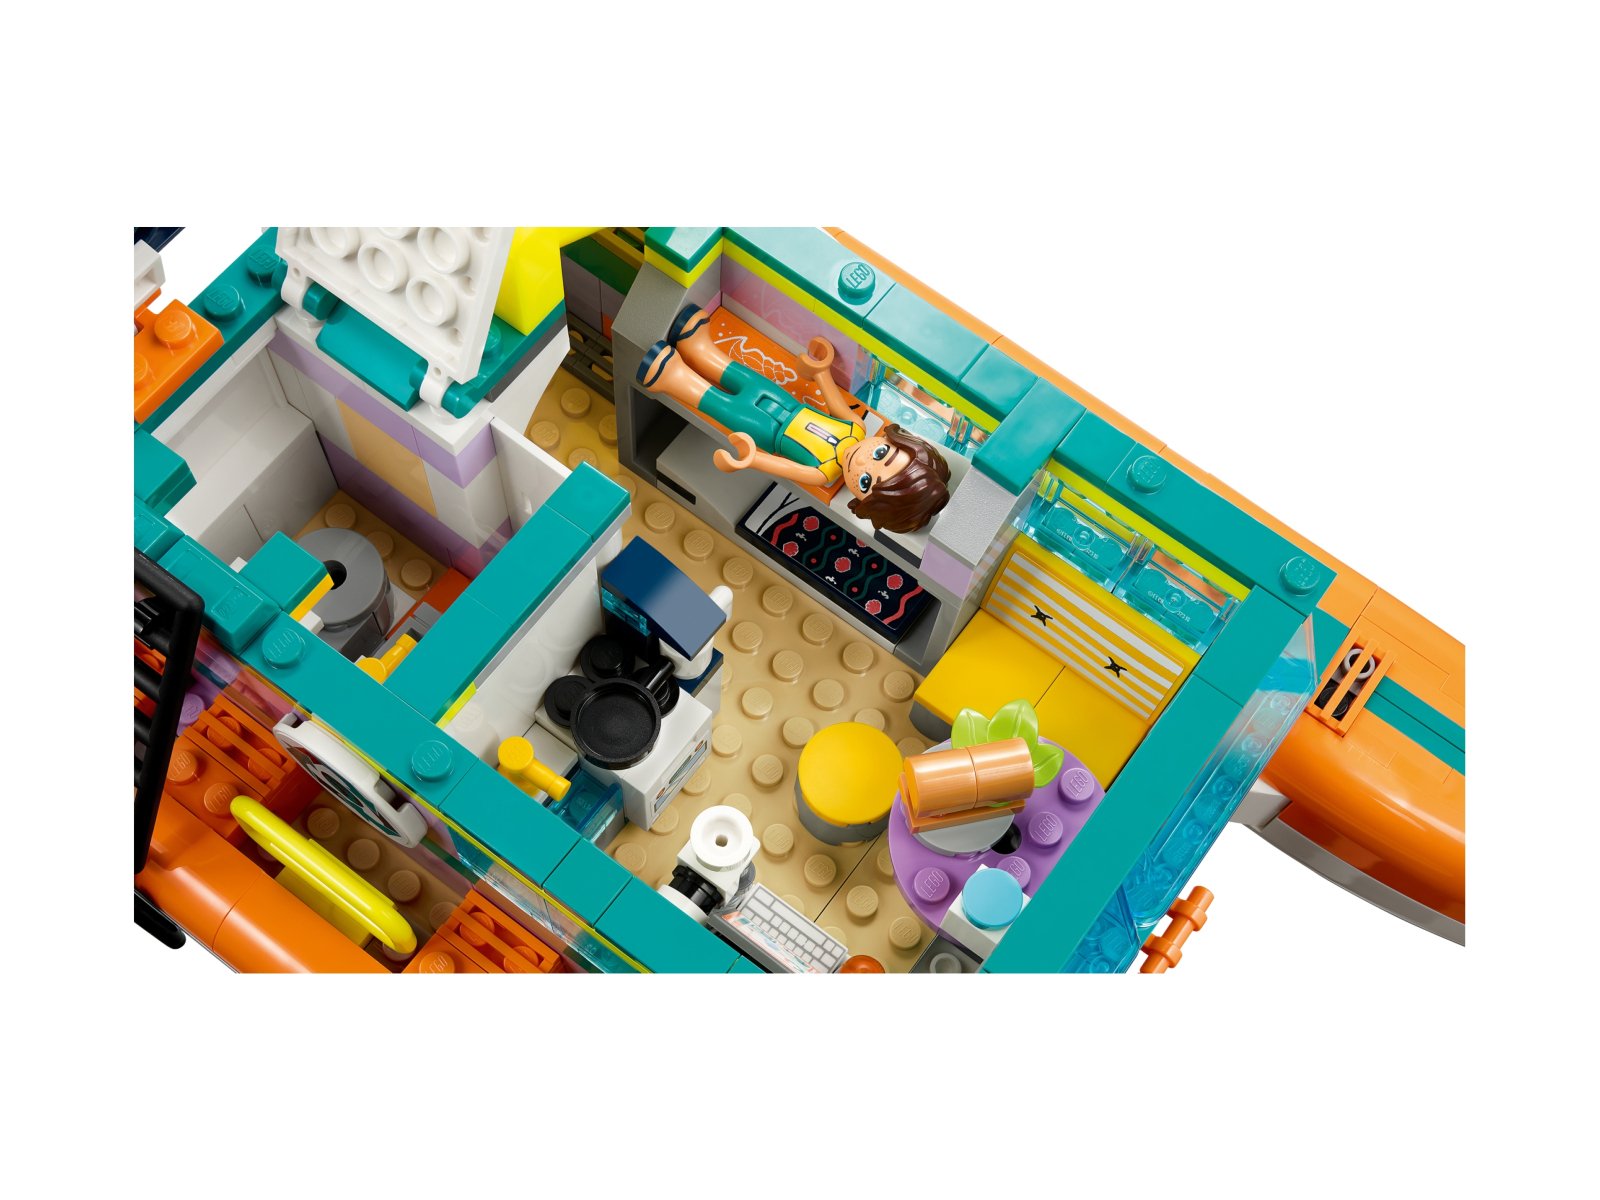 LEGO Friends Morska łódź ratunkowa 41734